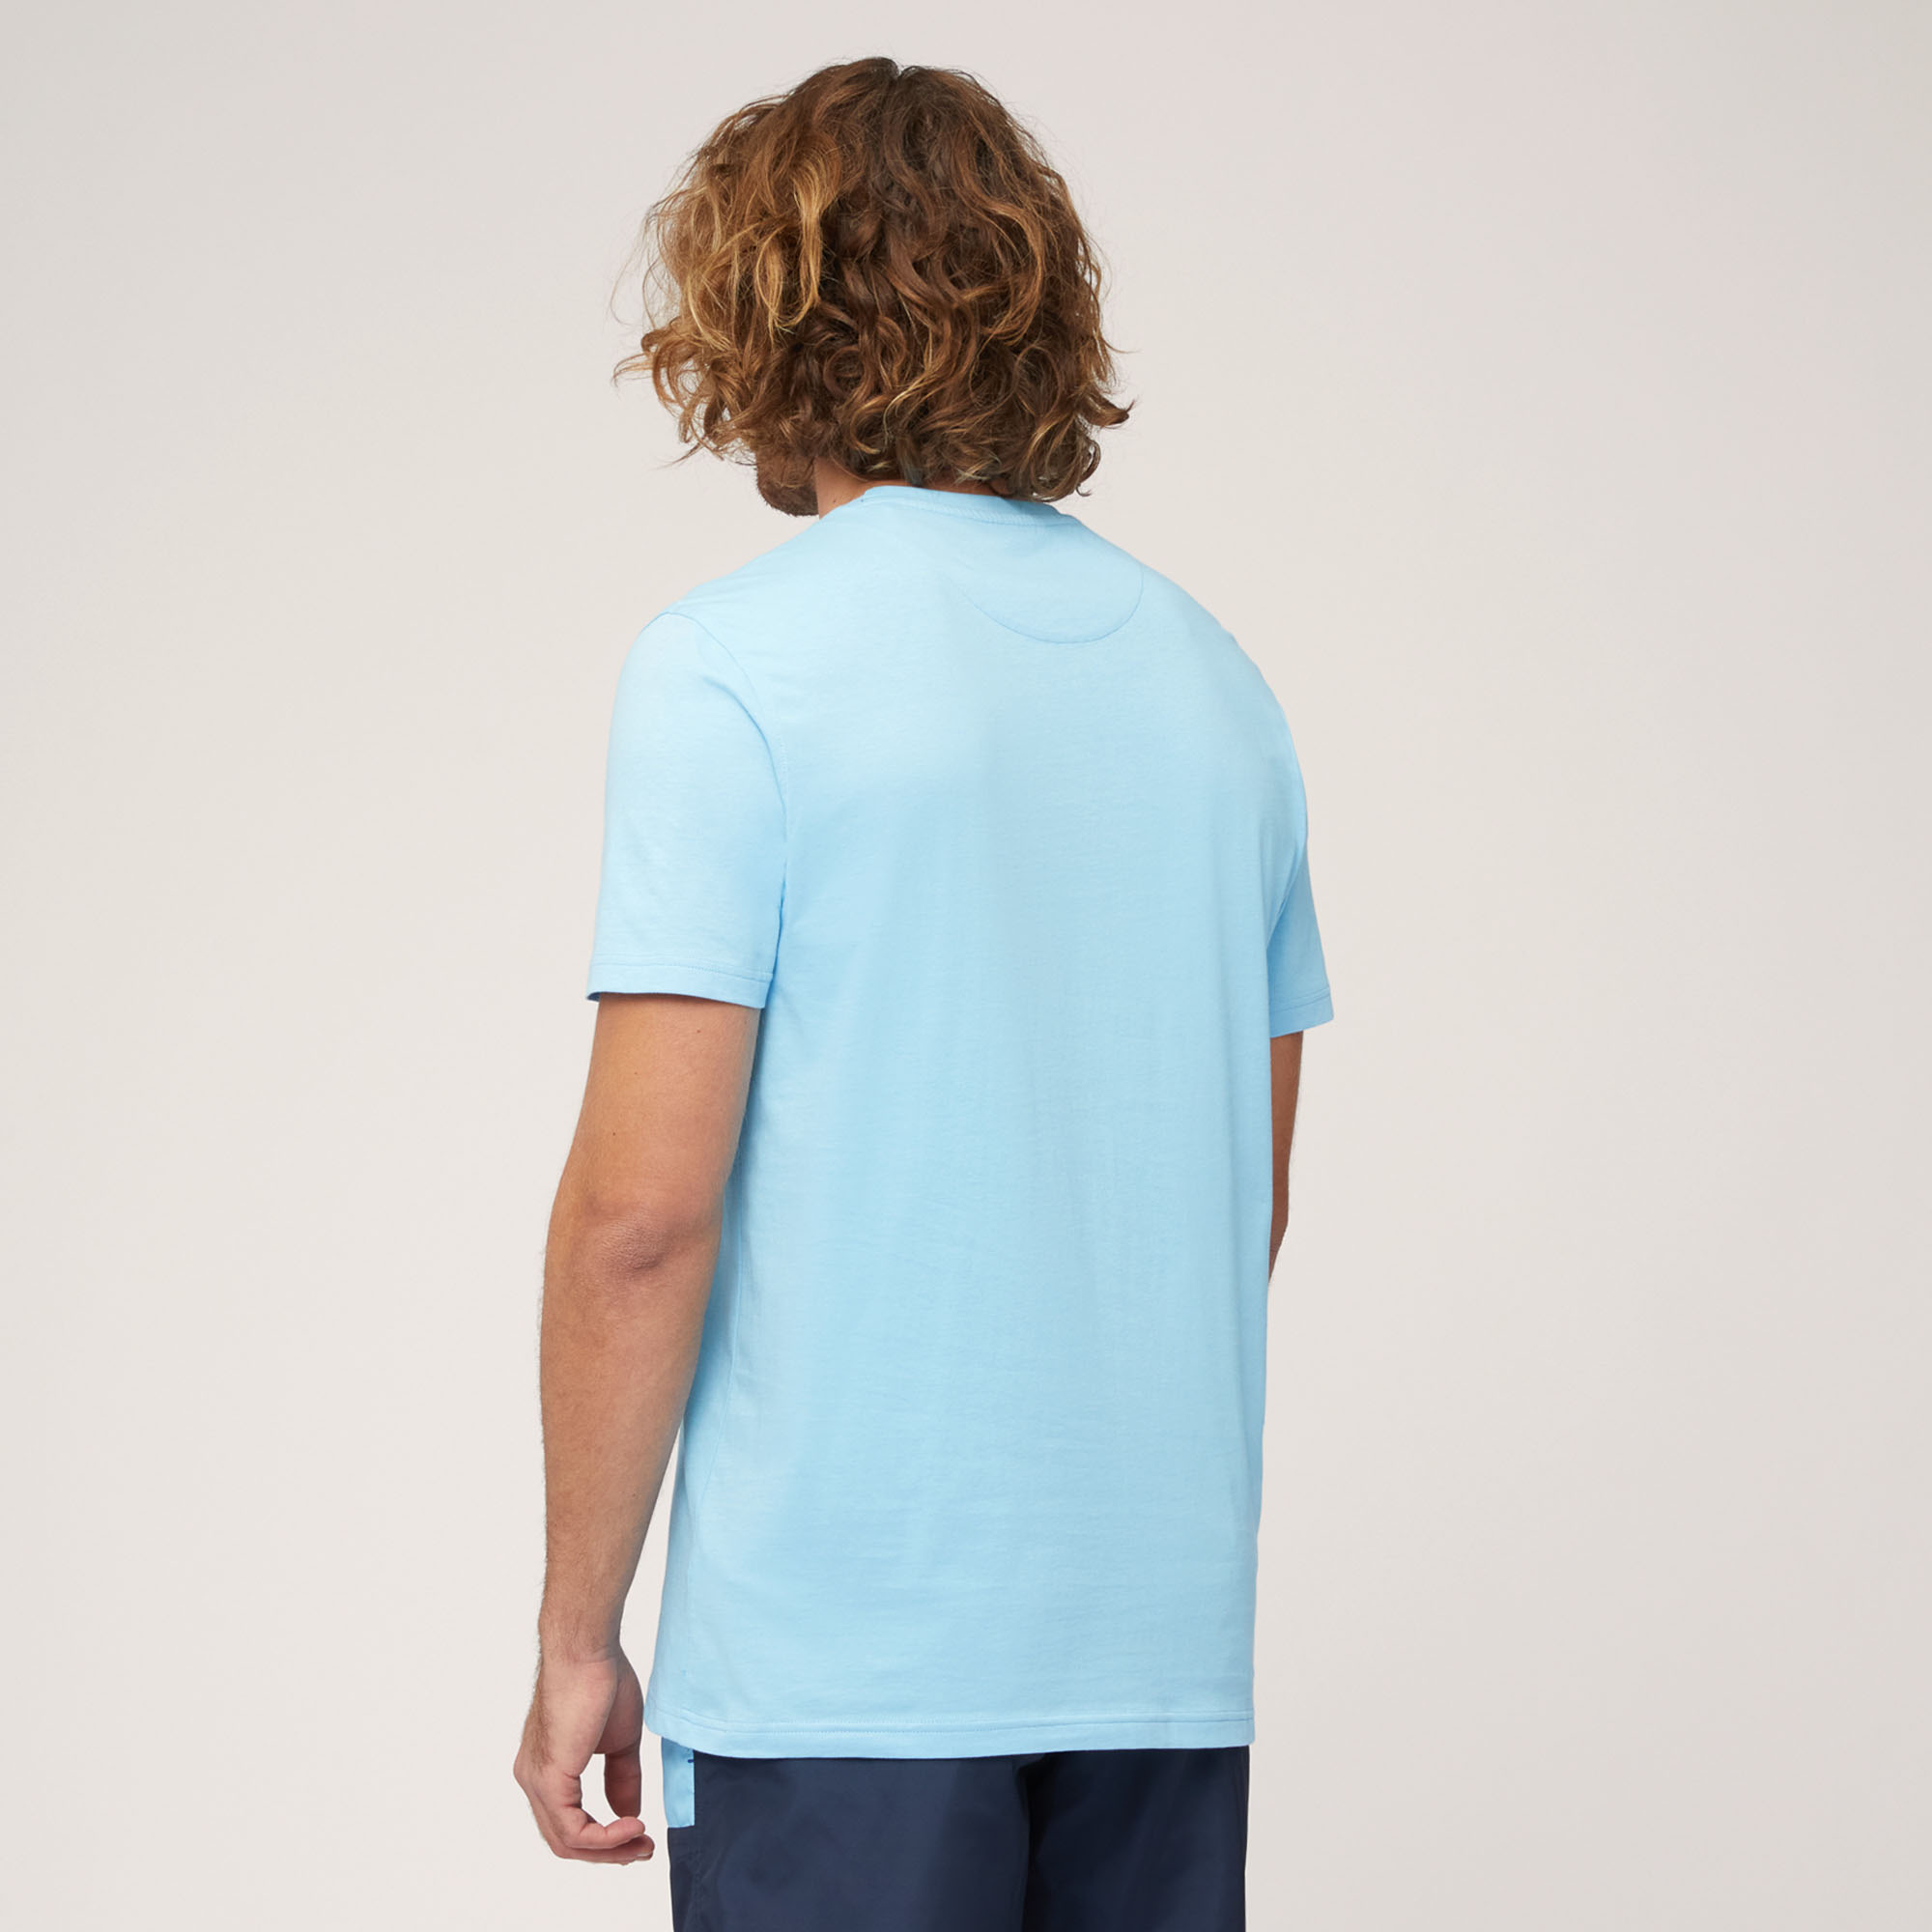 T-Shirt Amalfiküste, Kobaltblau, large image number 1